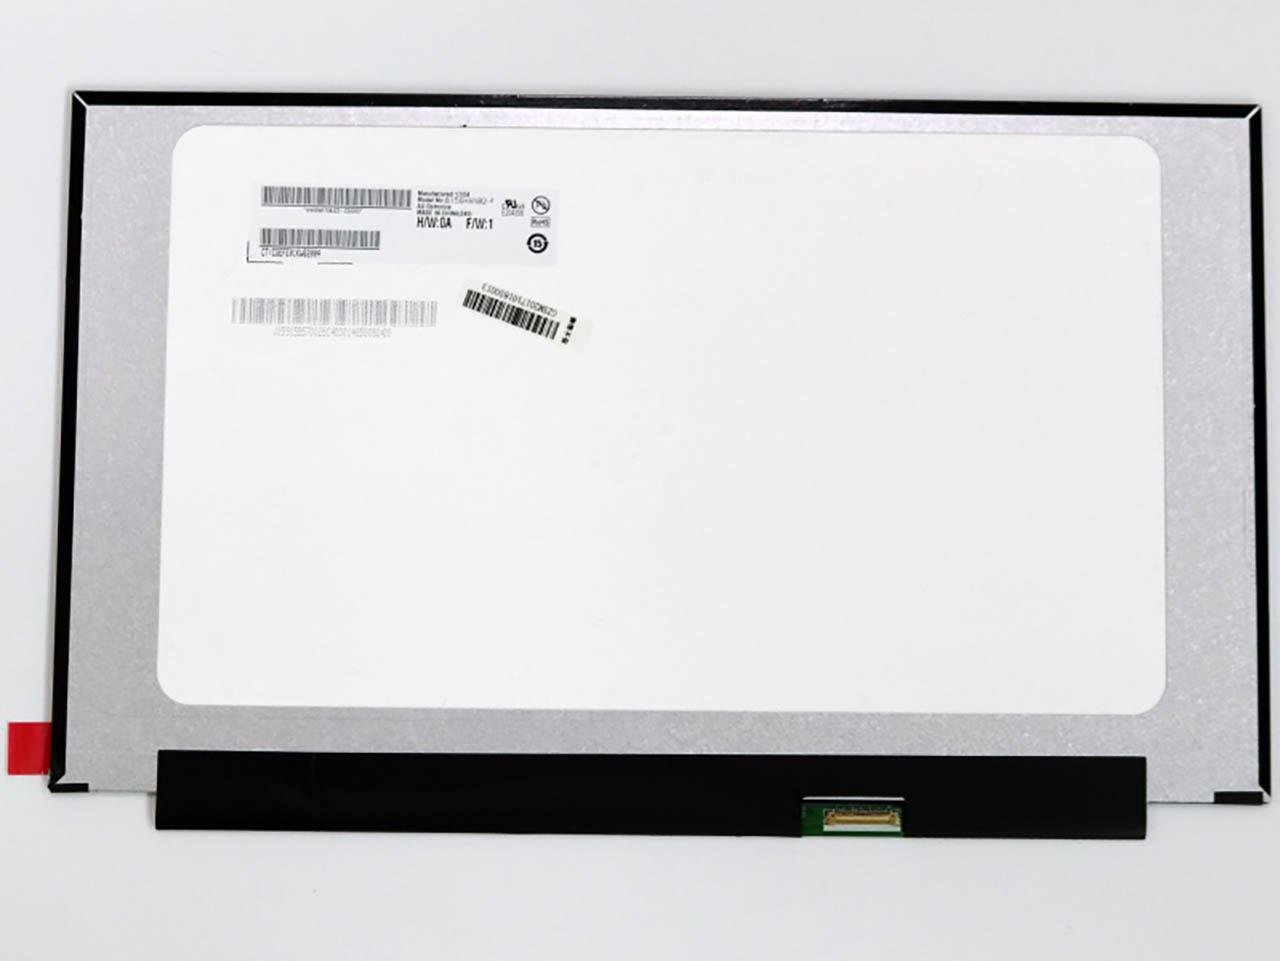 Матриця для ноутбука LP156WFG-SPB2 15.6" Full HD 1080p/HDTV 16:9 eDP 40 pin справа внизу